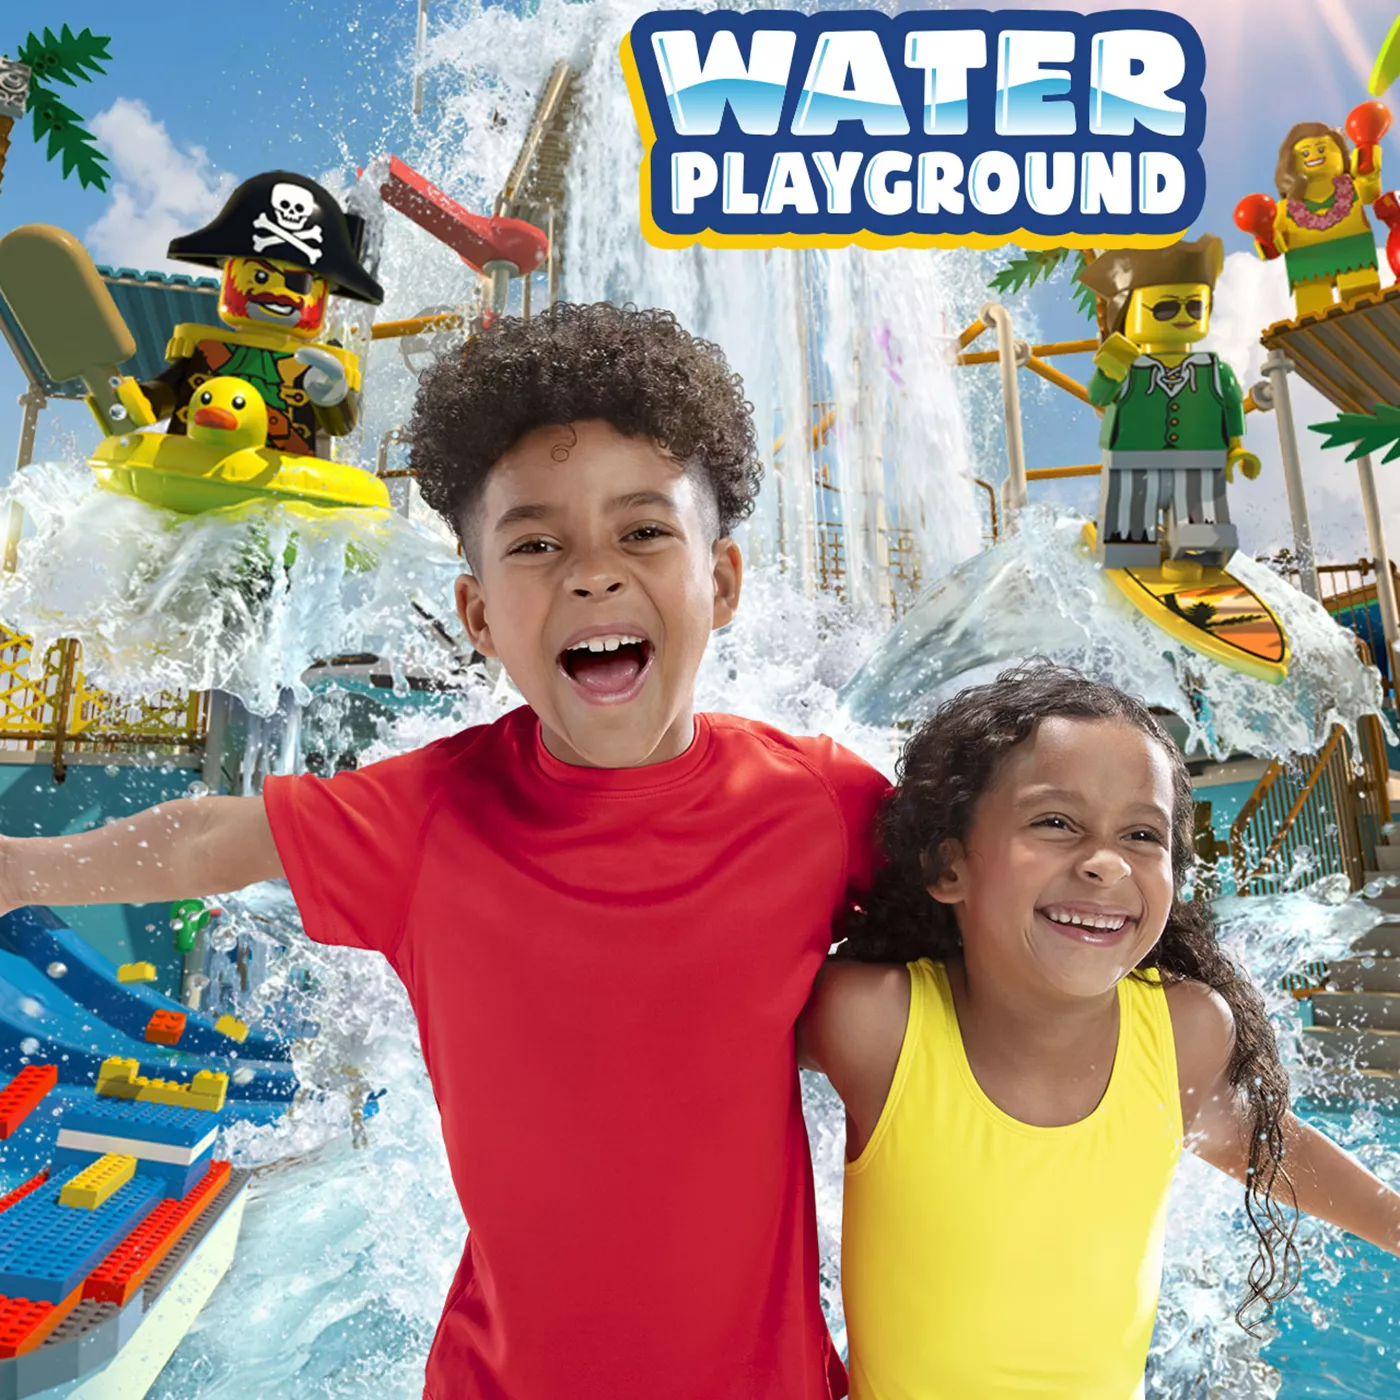 Water Playground - Legoland New York